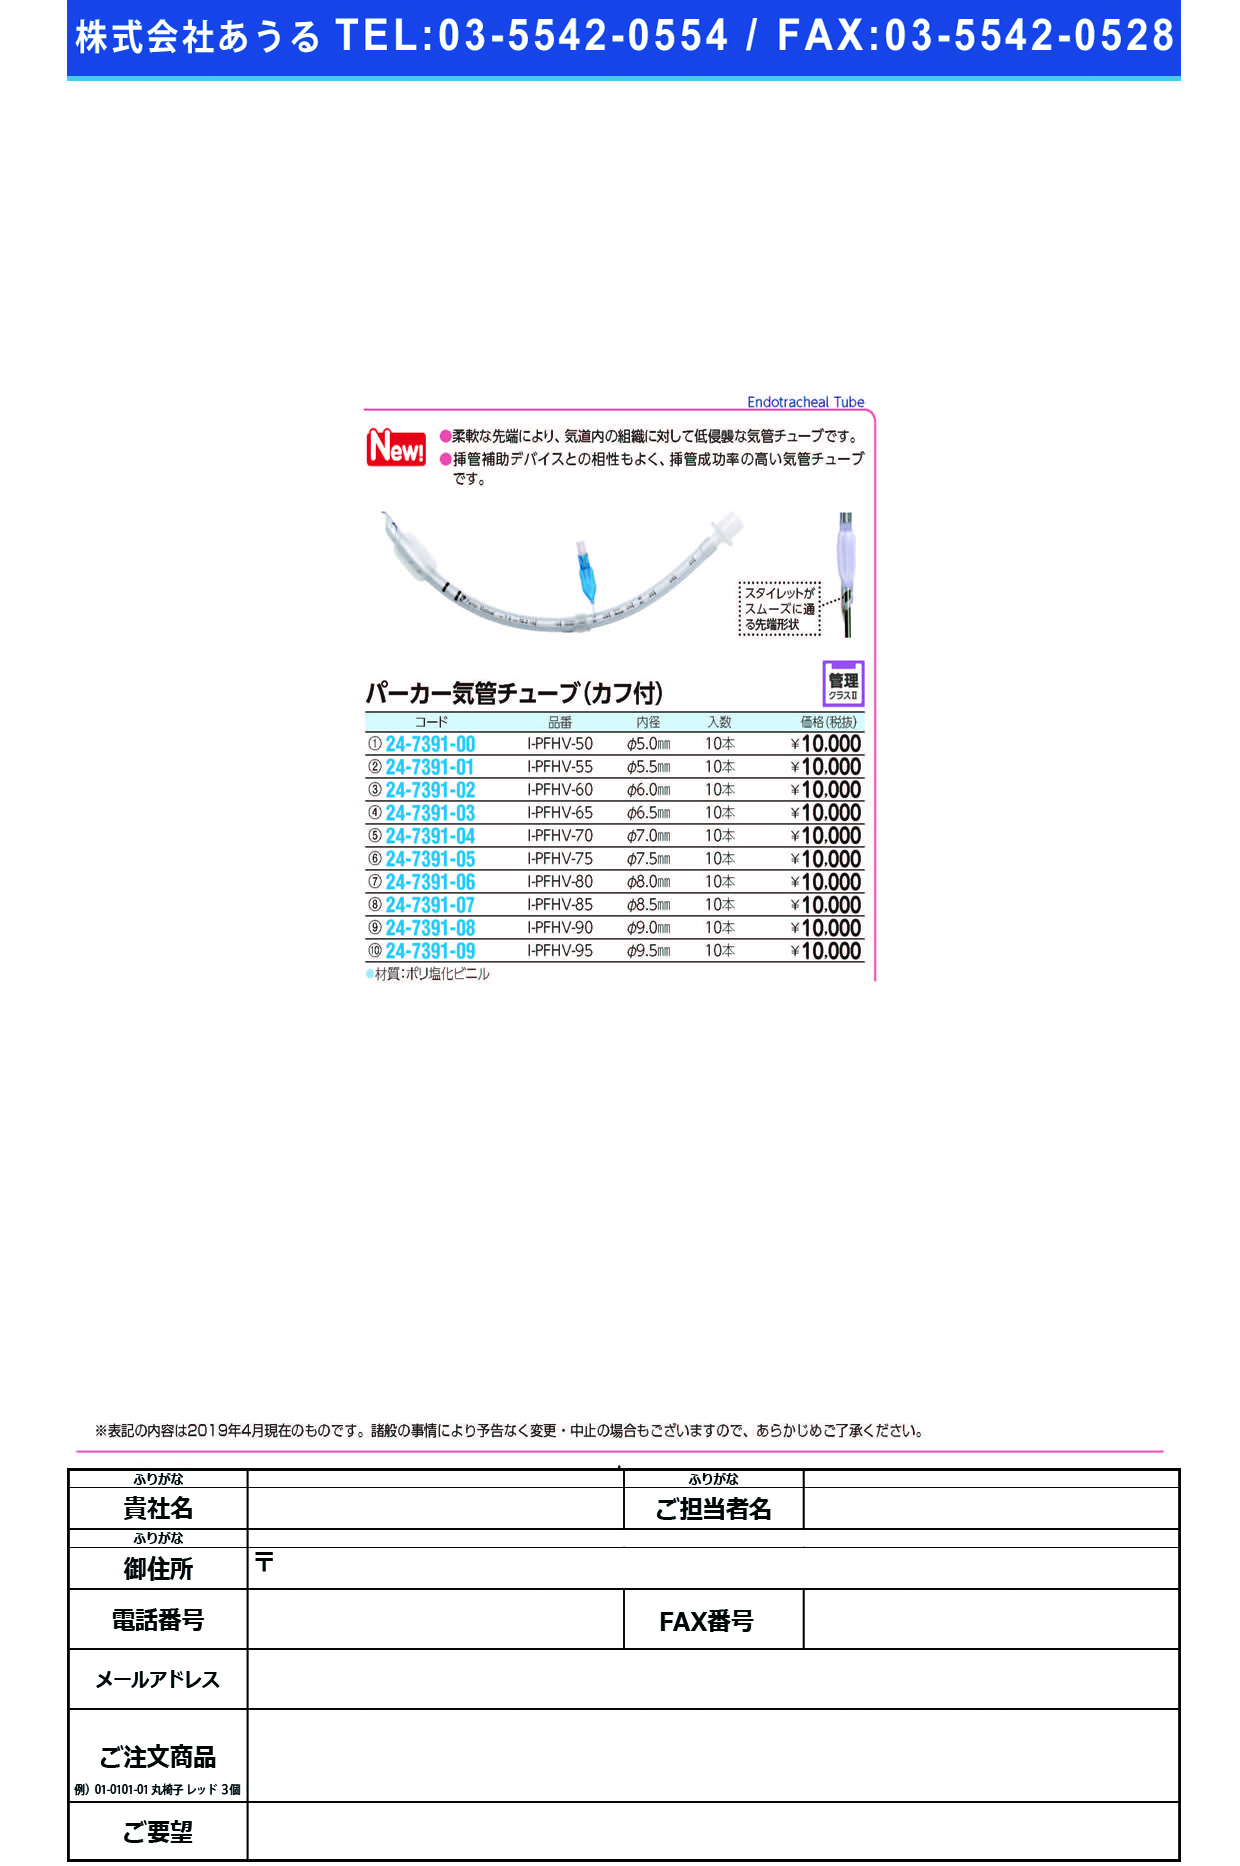 (24-7391-02)パーカー気管チューブI-PFHV-60(6.0MM)10ﾎﾝ ﾊﾟｰｶｰｷｶﾝﾁｭｰﾌﾞ(日本メディカルネクスト)【1箱単位】【2019年カタログ商品】